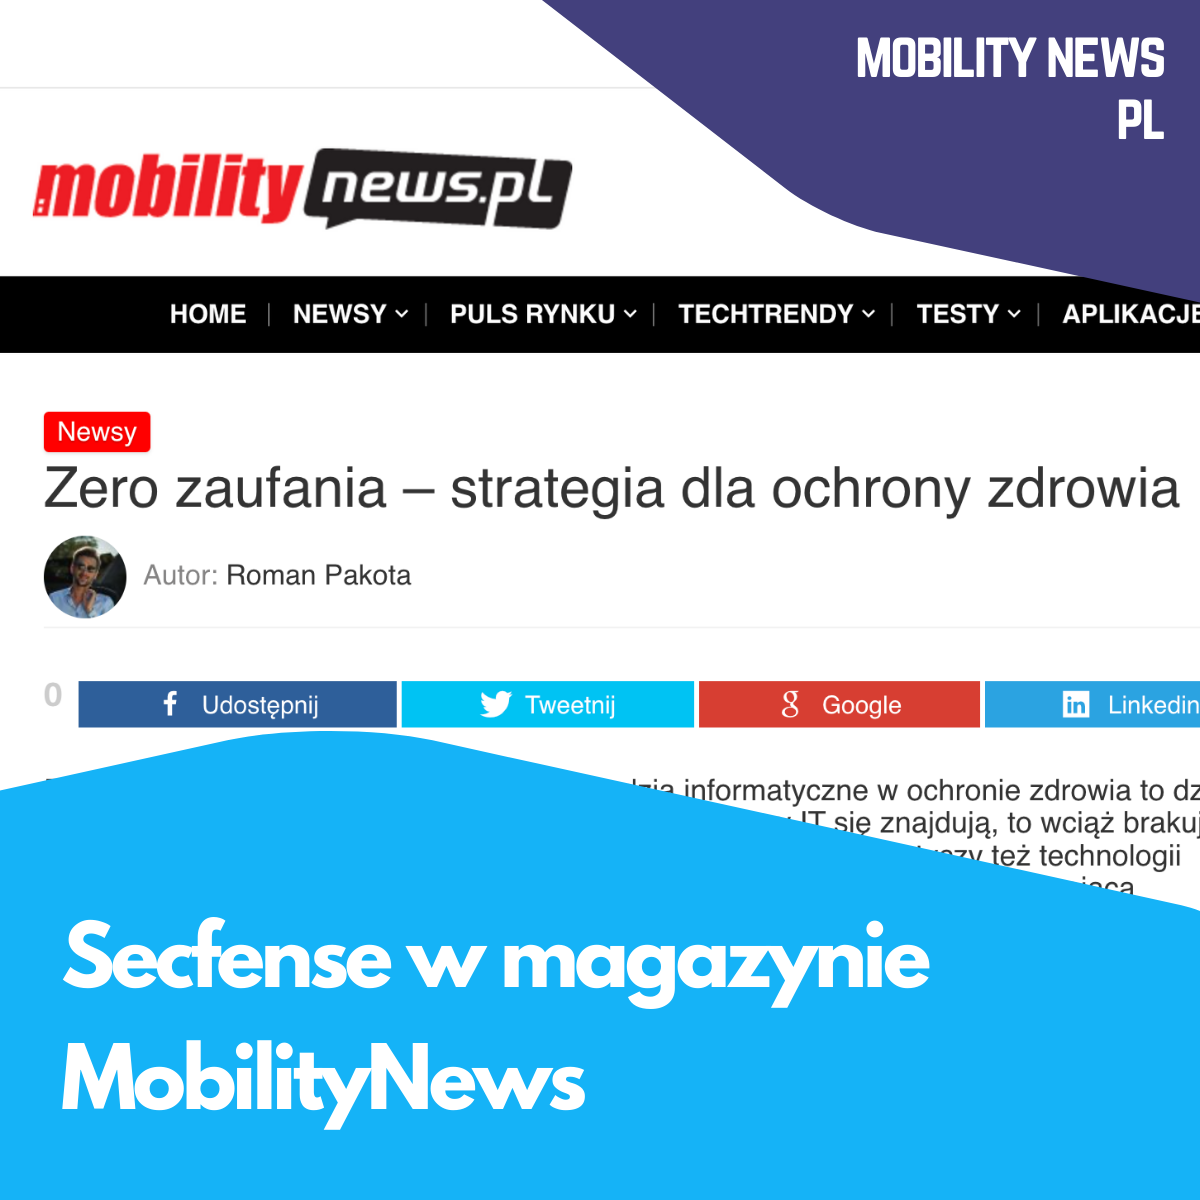 Secfense w magazynie MobilityNews